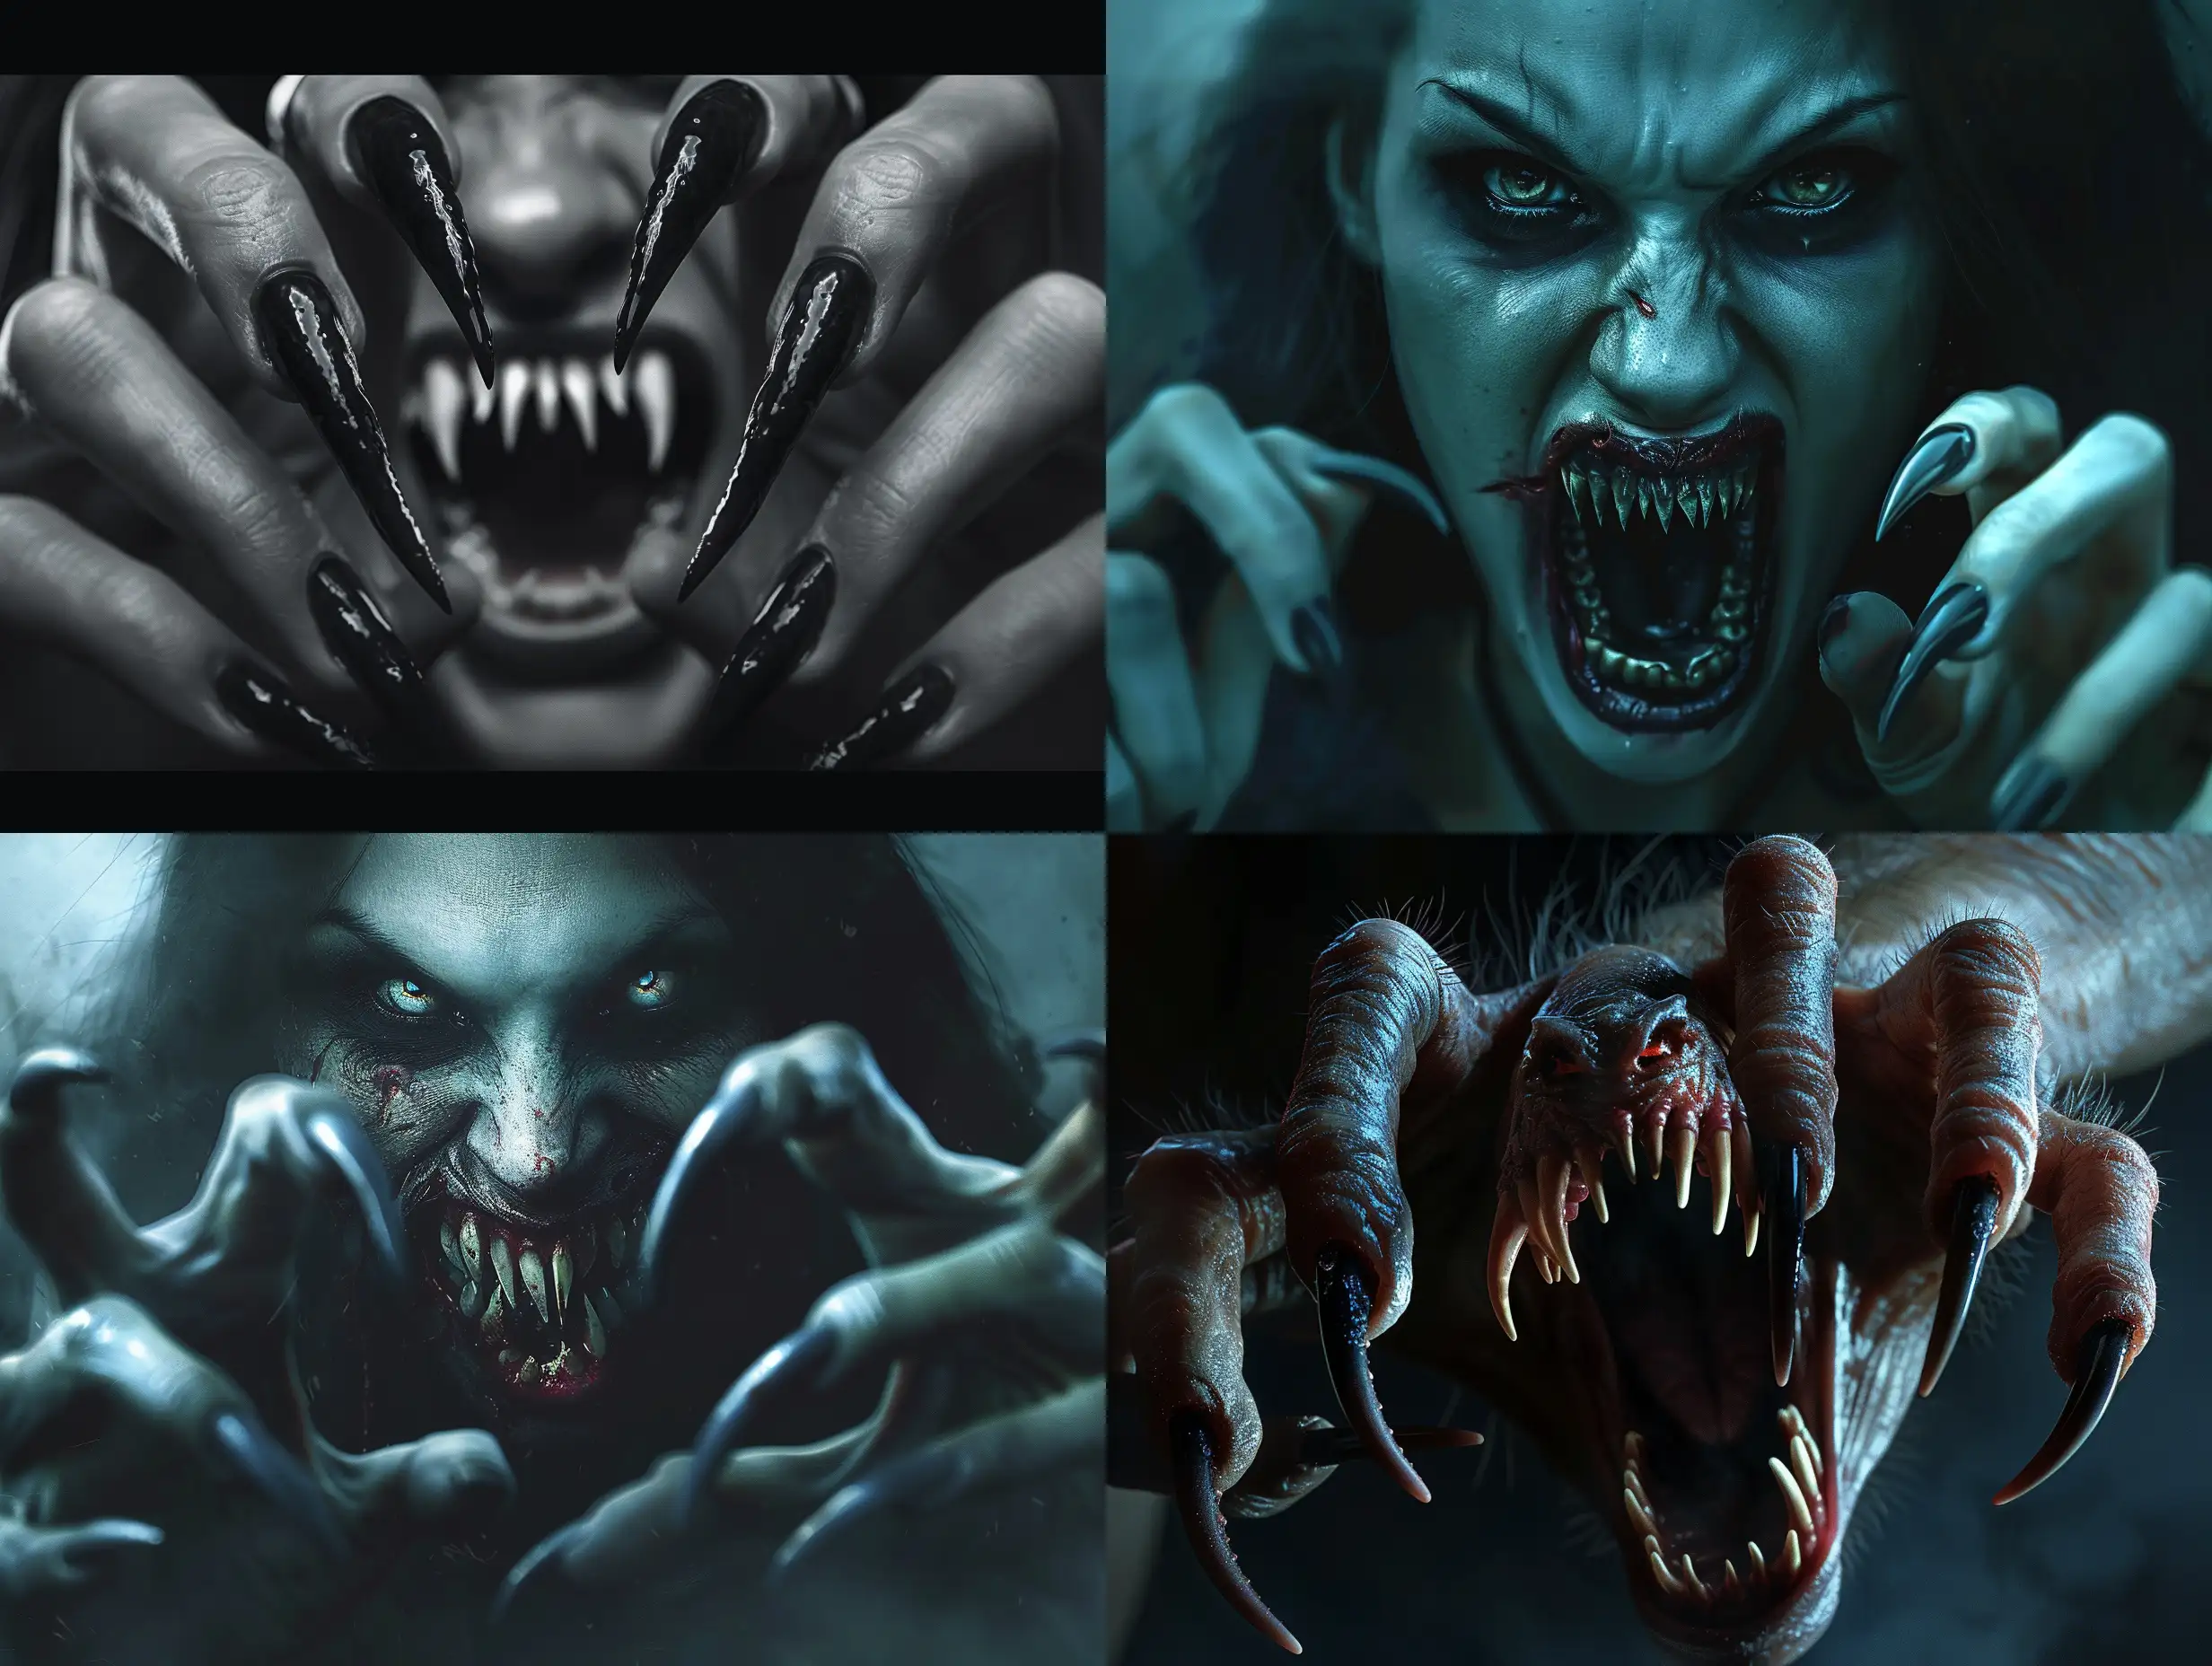 HyperRealistic-Monstrous-Female-Vampire-Attack-Scene